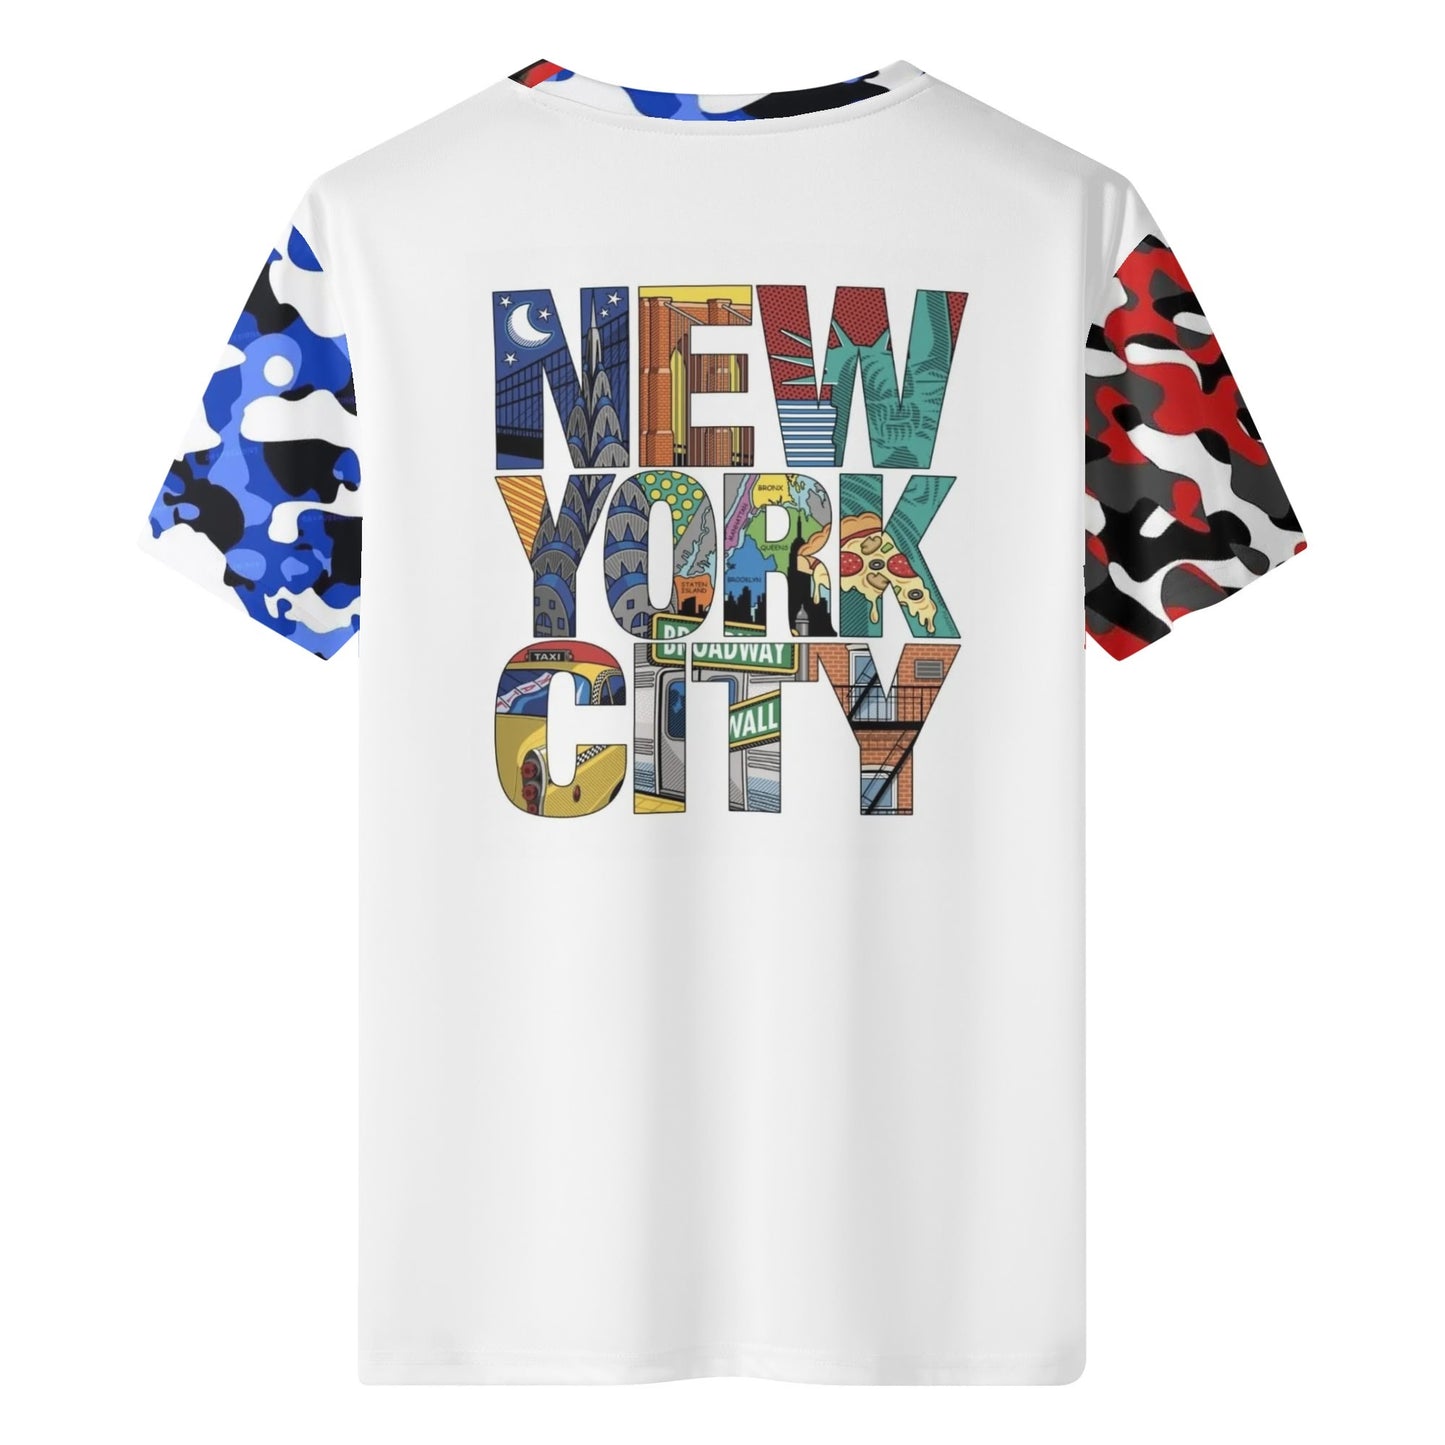 Mens Sean Breed Love NY New York Classic T-Shirt